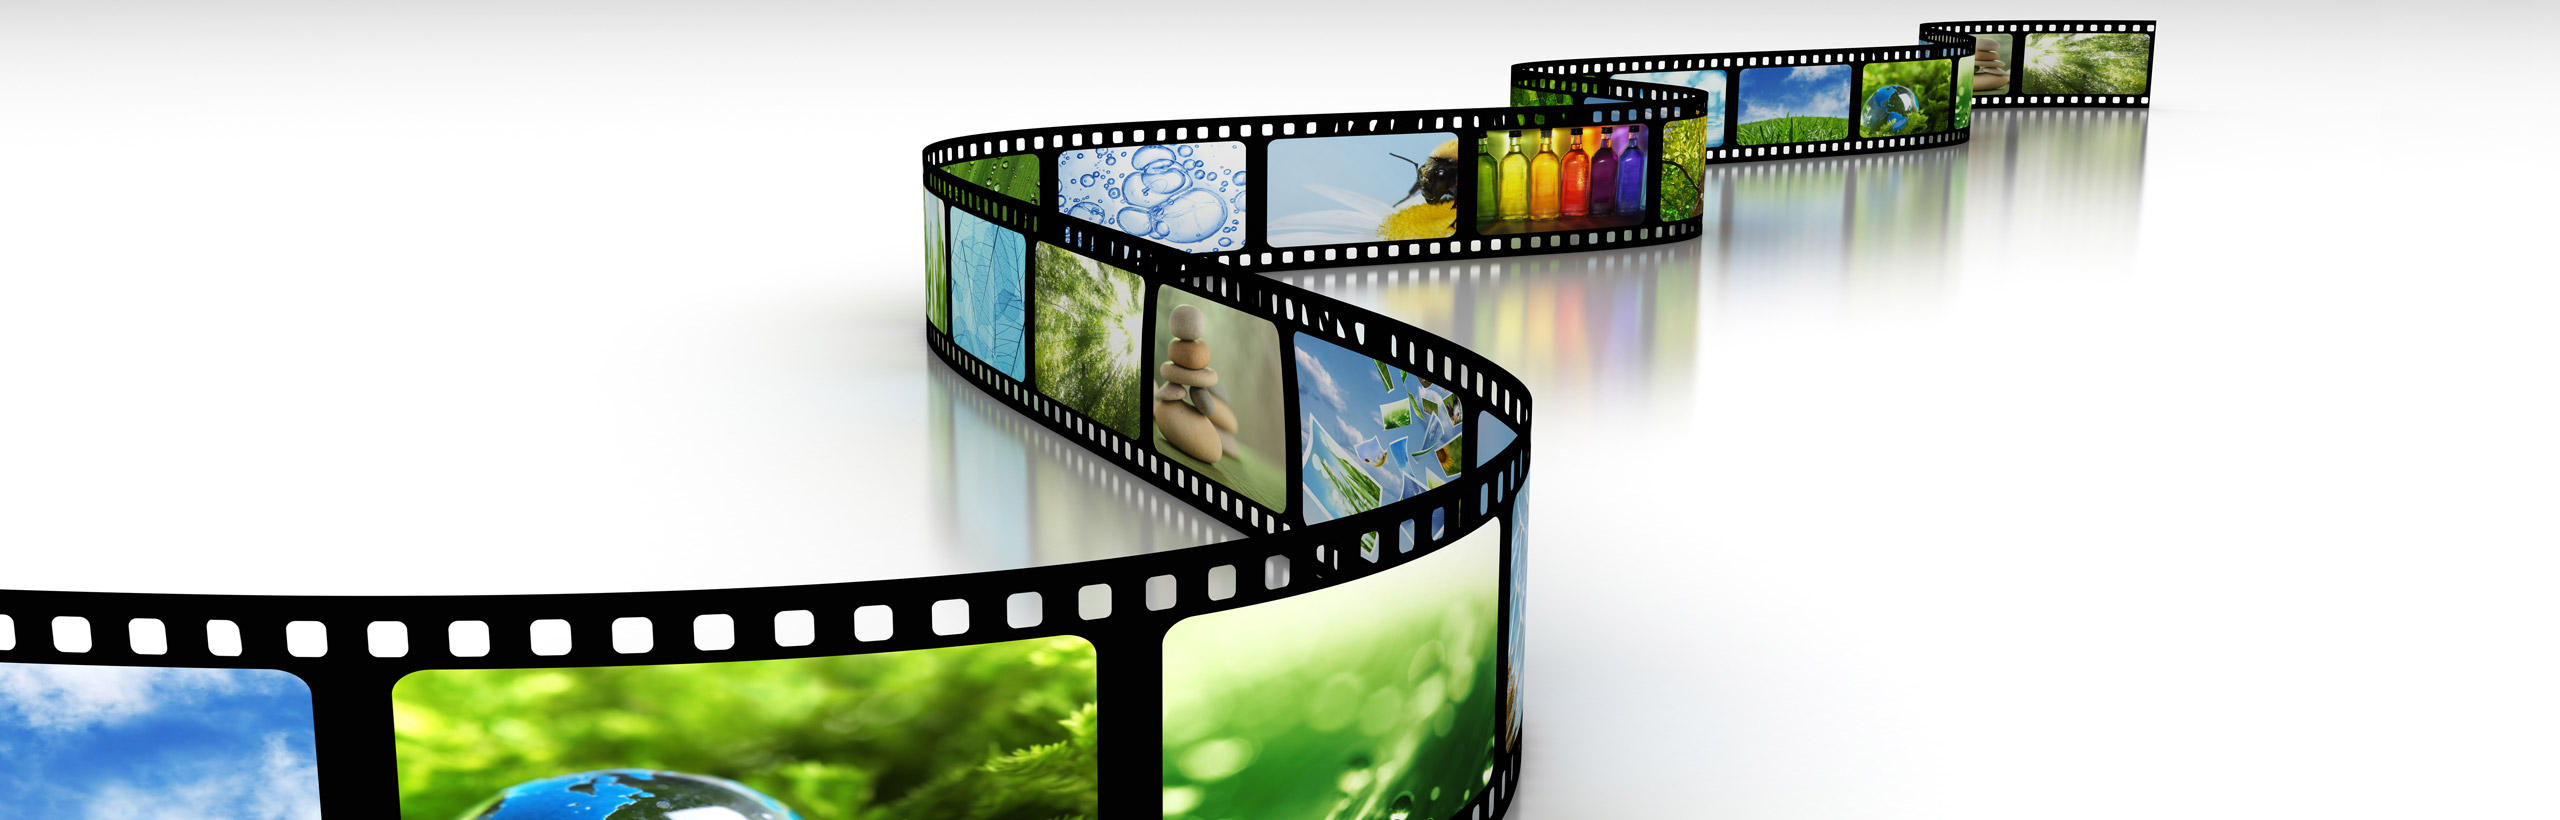  Creació i distribució de continguts informatius i d'entreteniment audiovisual.